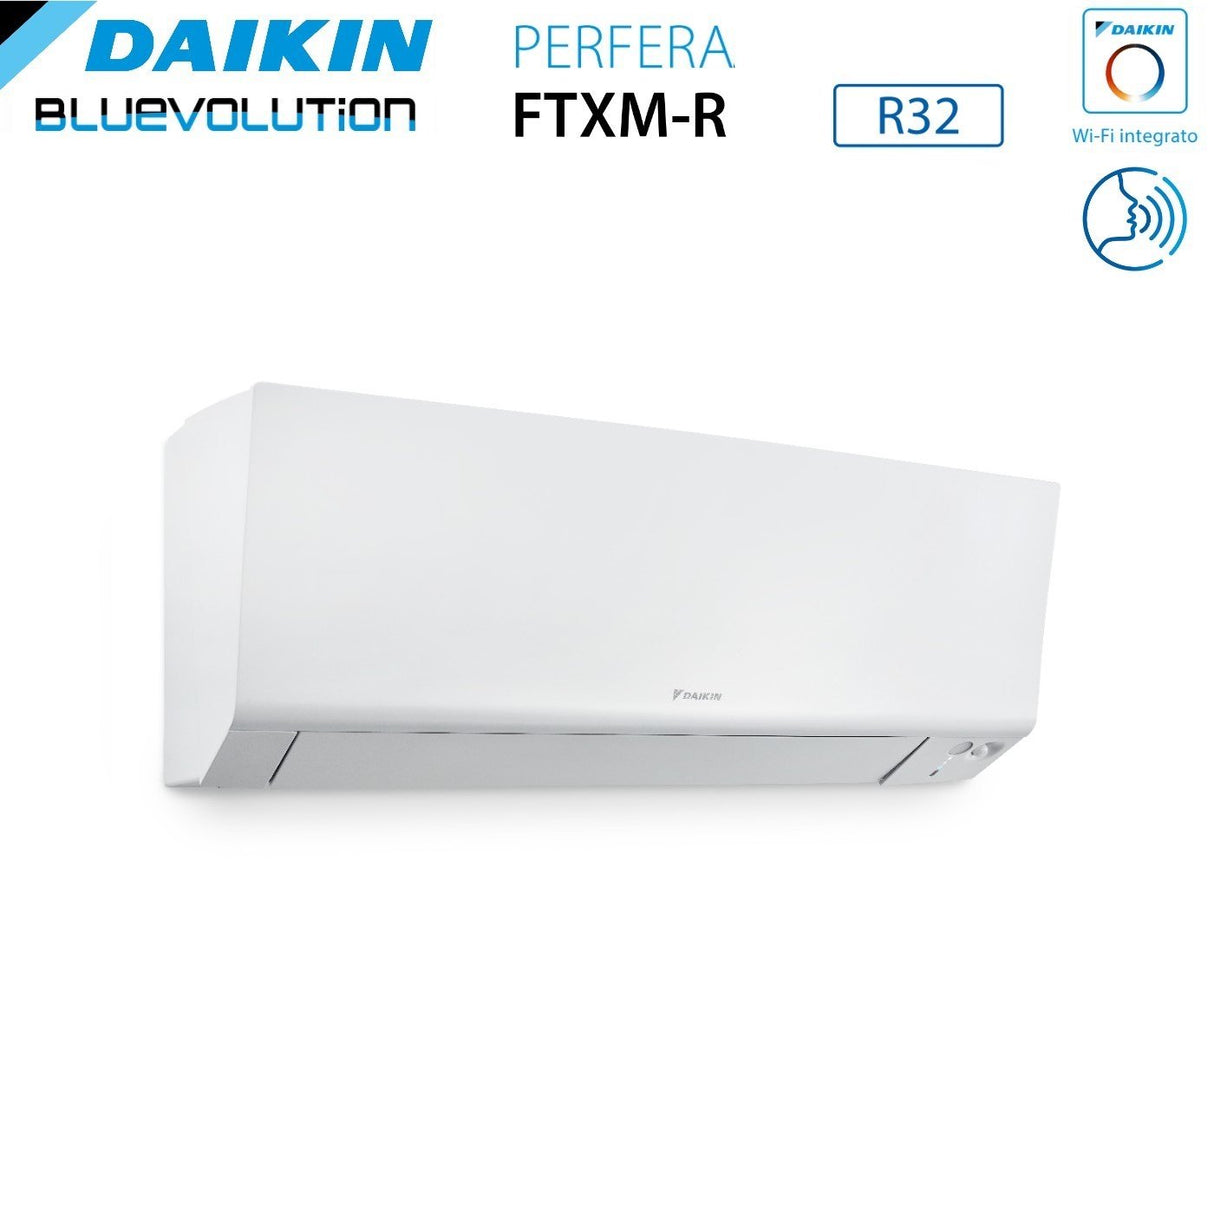 immagine-4-daikin-climatizzatore-condizionatore-daikin-bluevolution-quadri-split-inverter-serie-ftxmr-perfera-wall-791212-con-4mxm80a-r-32-wi-fi-integrato-700090001200012000-garanzia-italiana